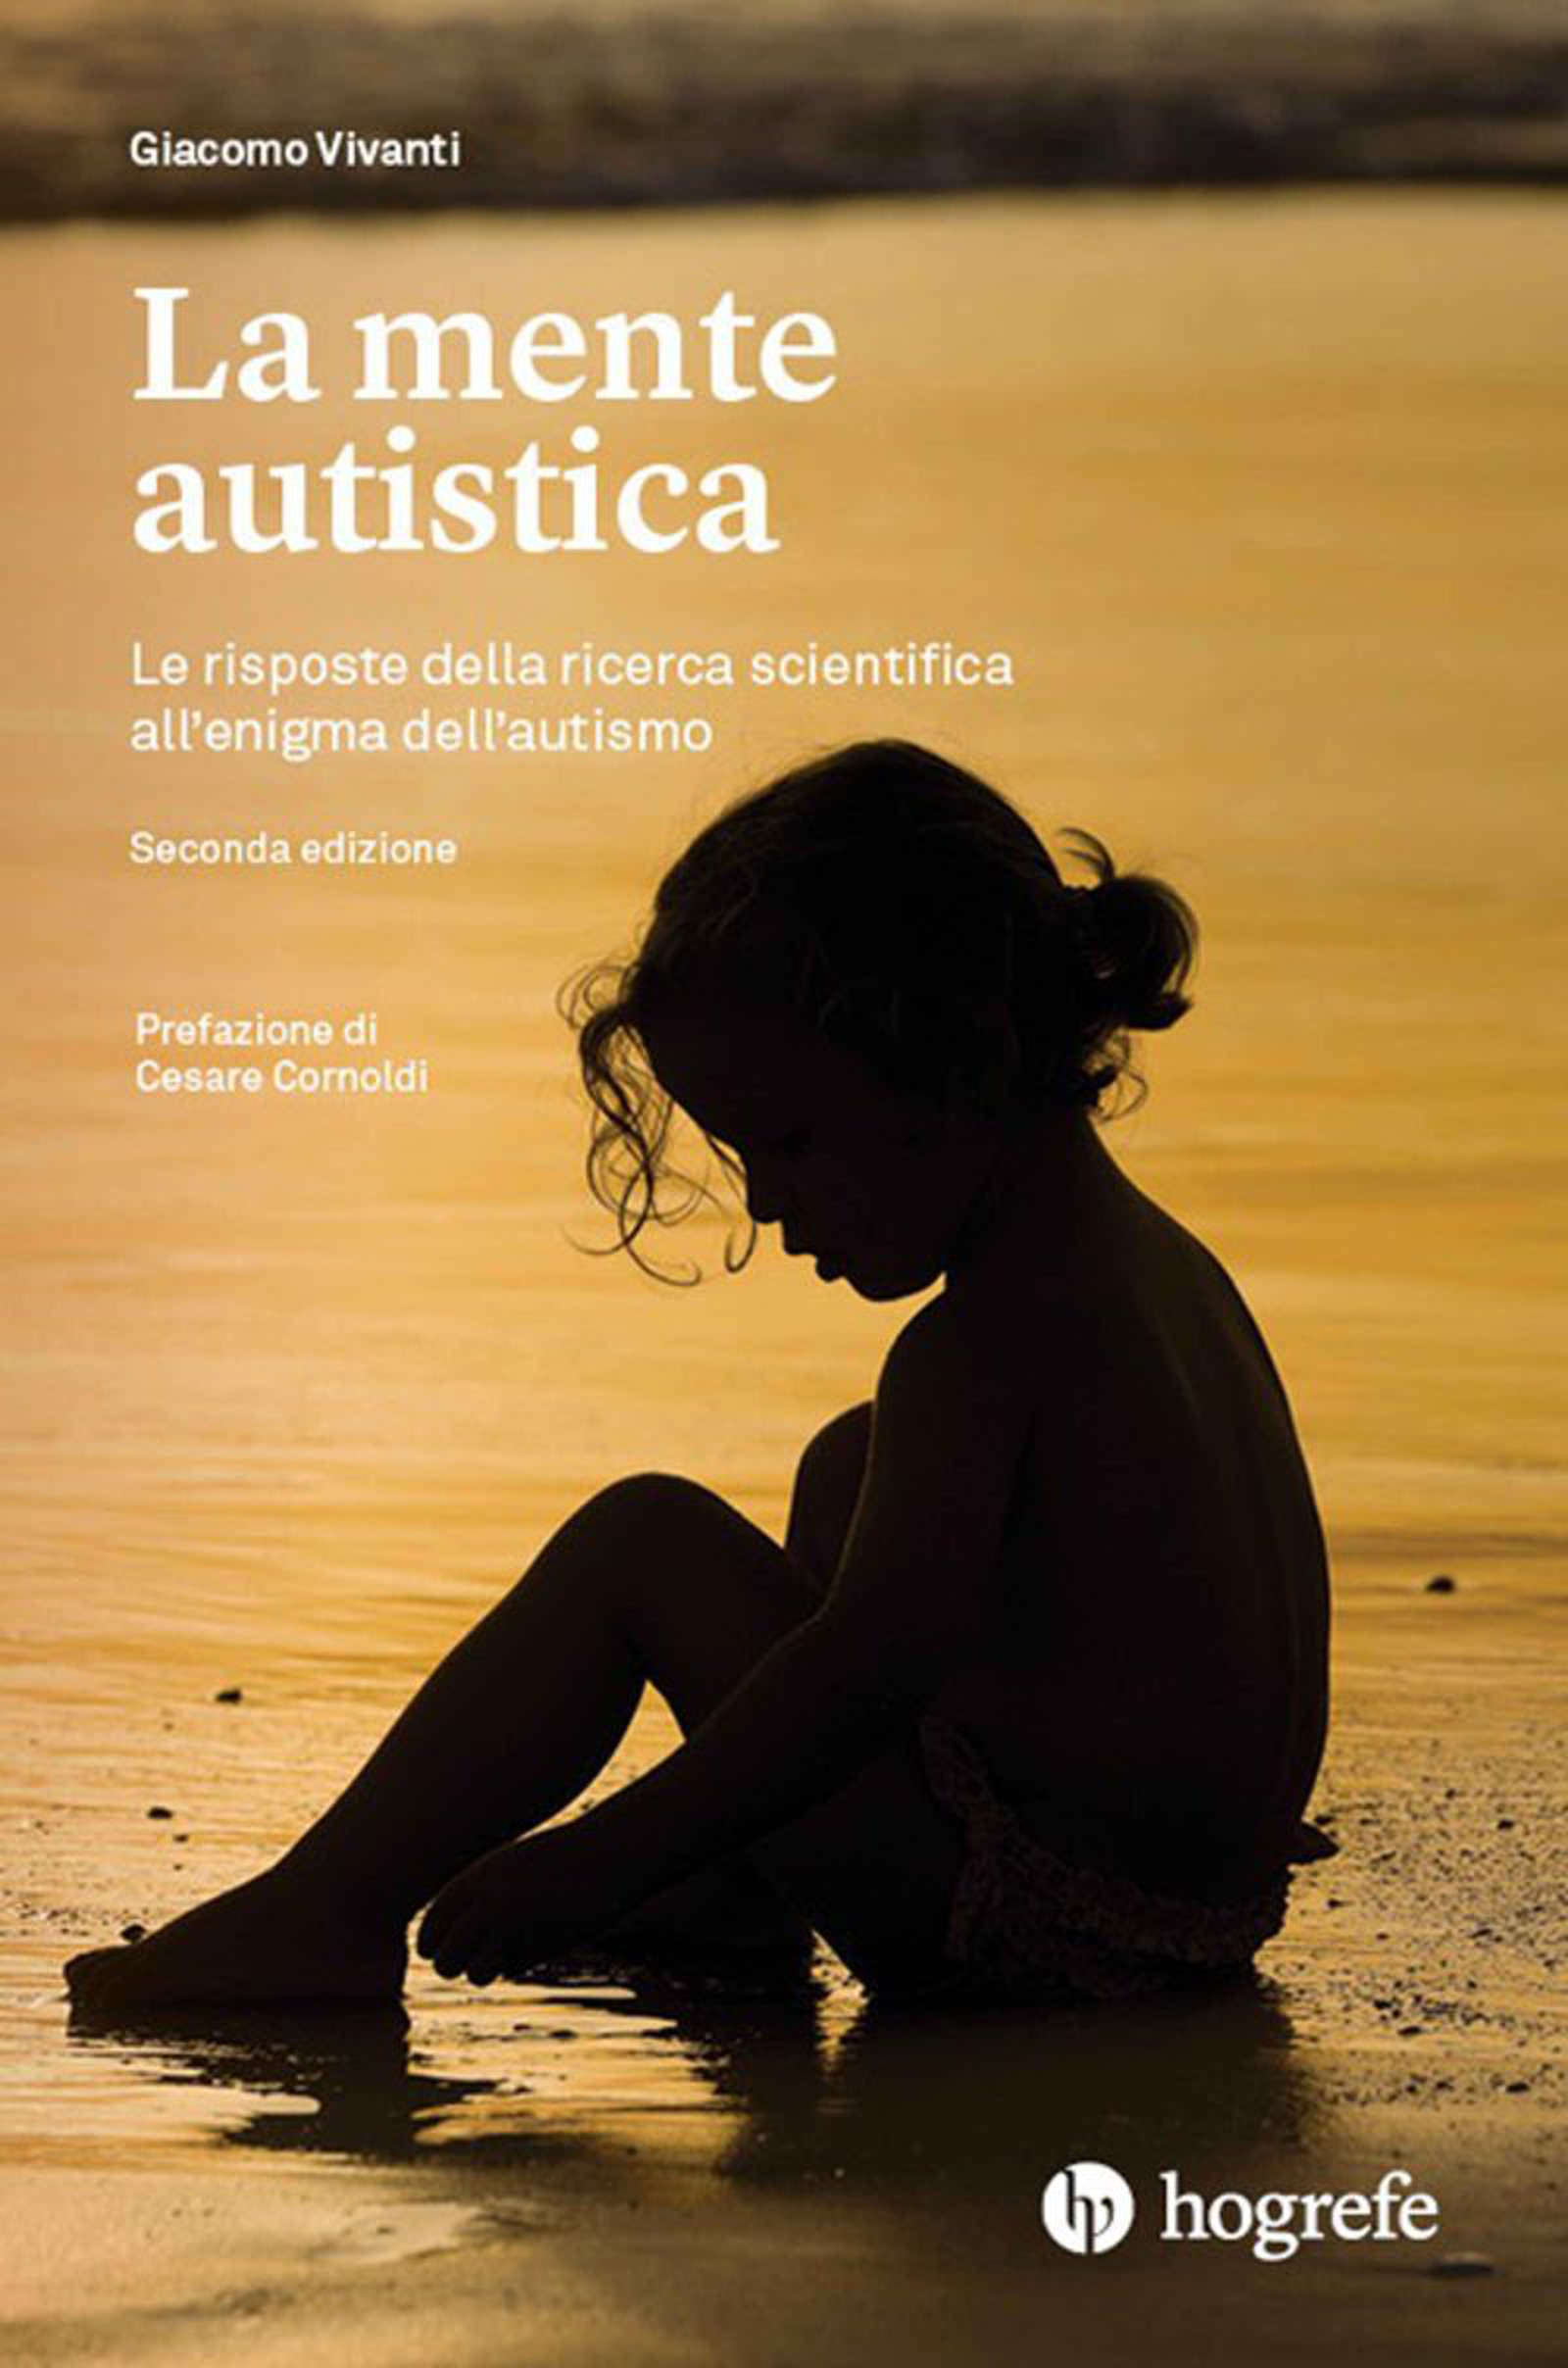 La mente autistica. Le risposte della ricerca scientifica all’enigma dell’autismo (2021) di Giacomo Vivanti – Recensione